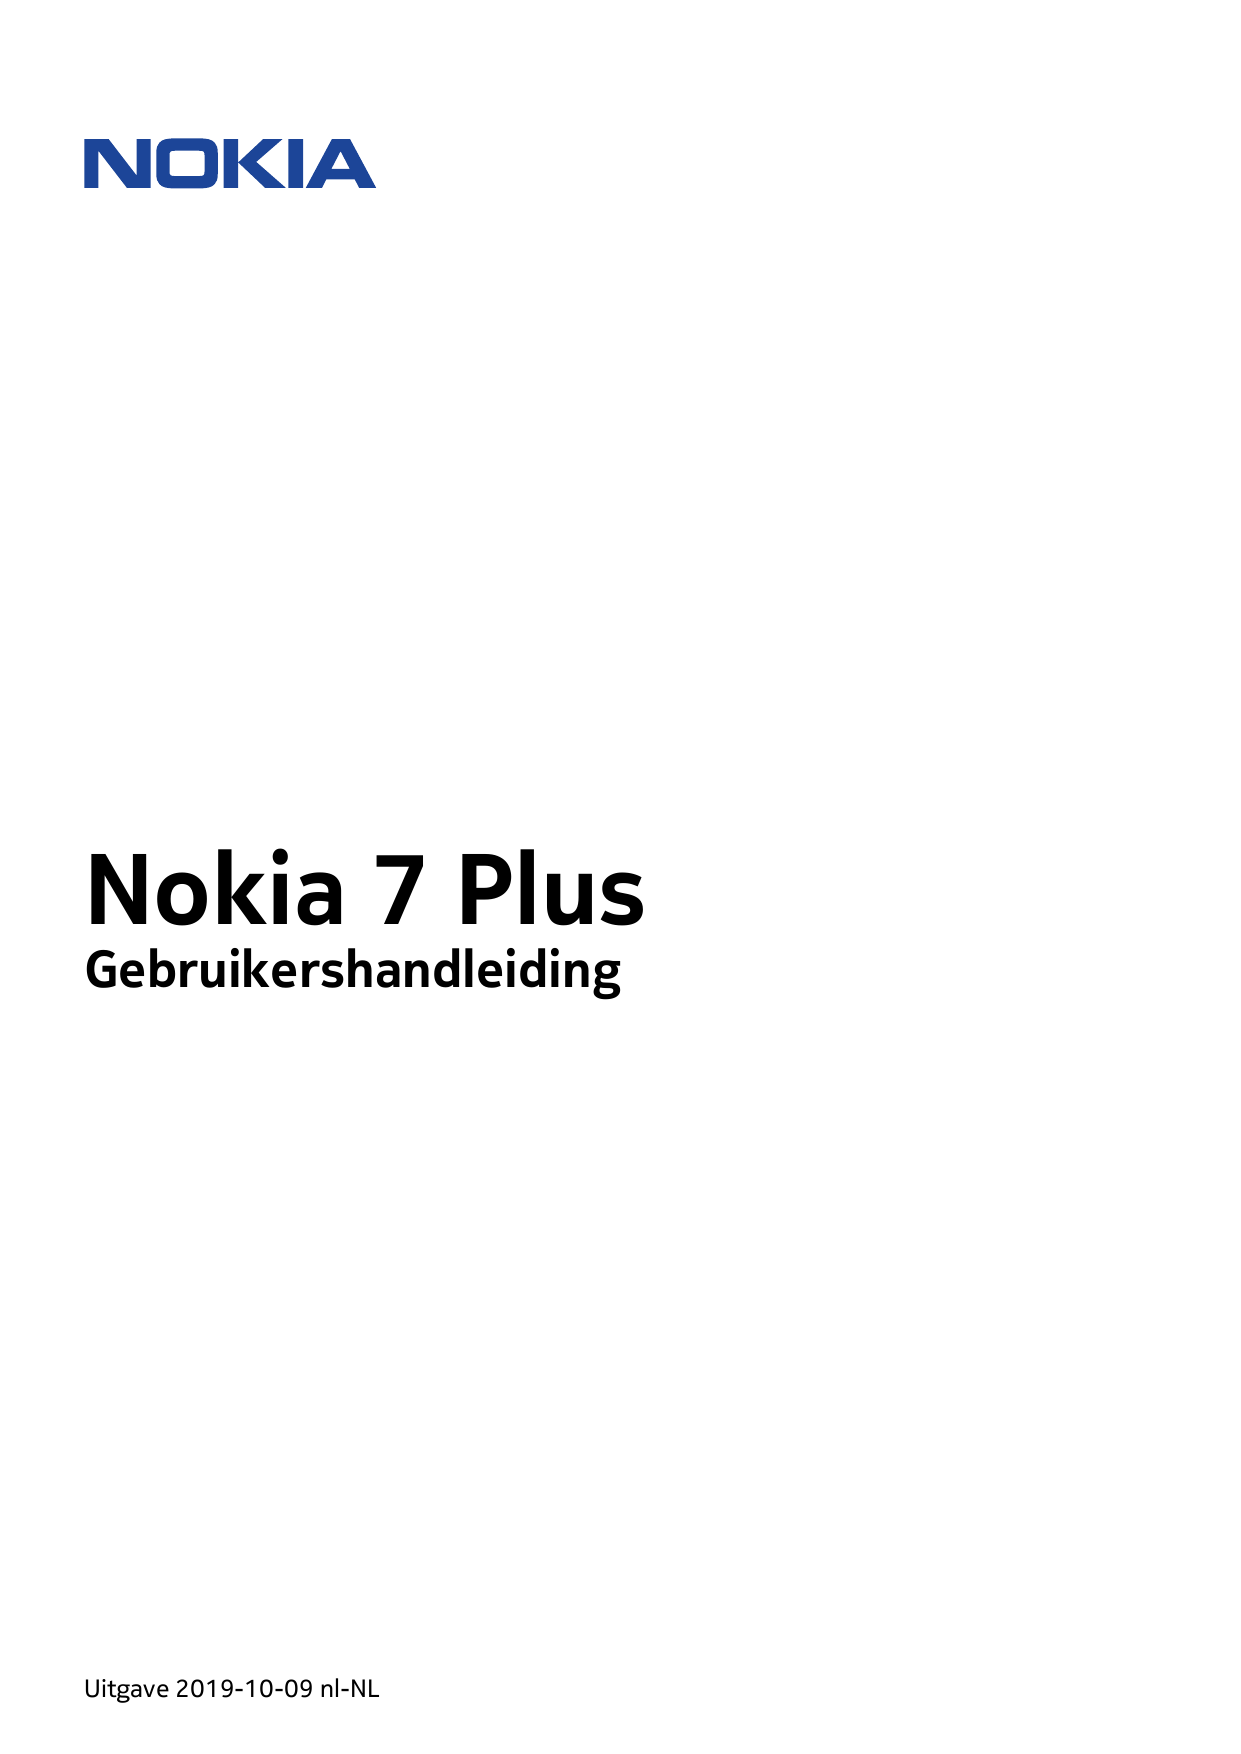 Nokia 7 PlusGebruikershandleidingUitgave 2019-10-09 nl-NL